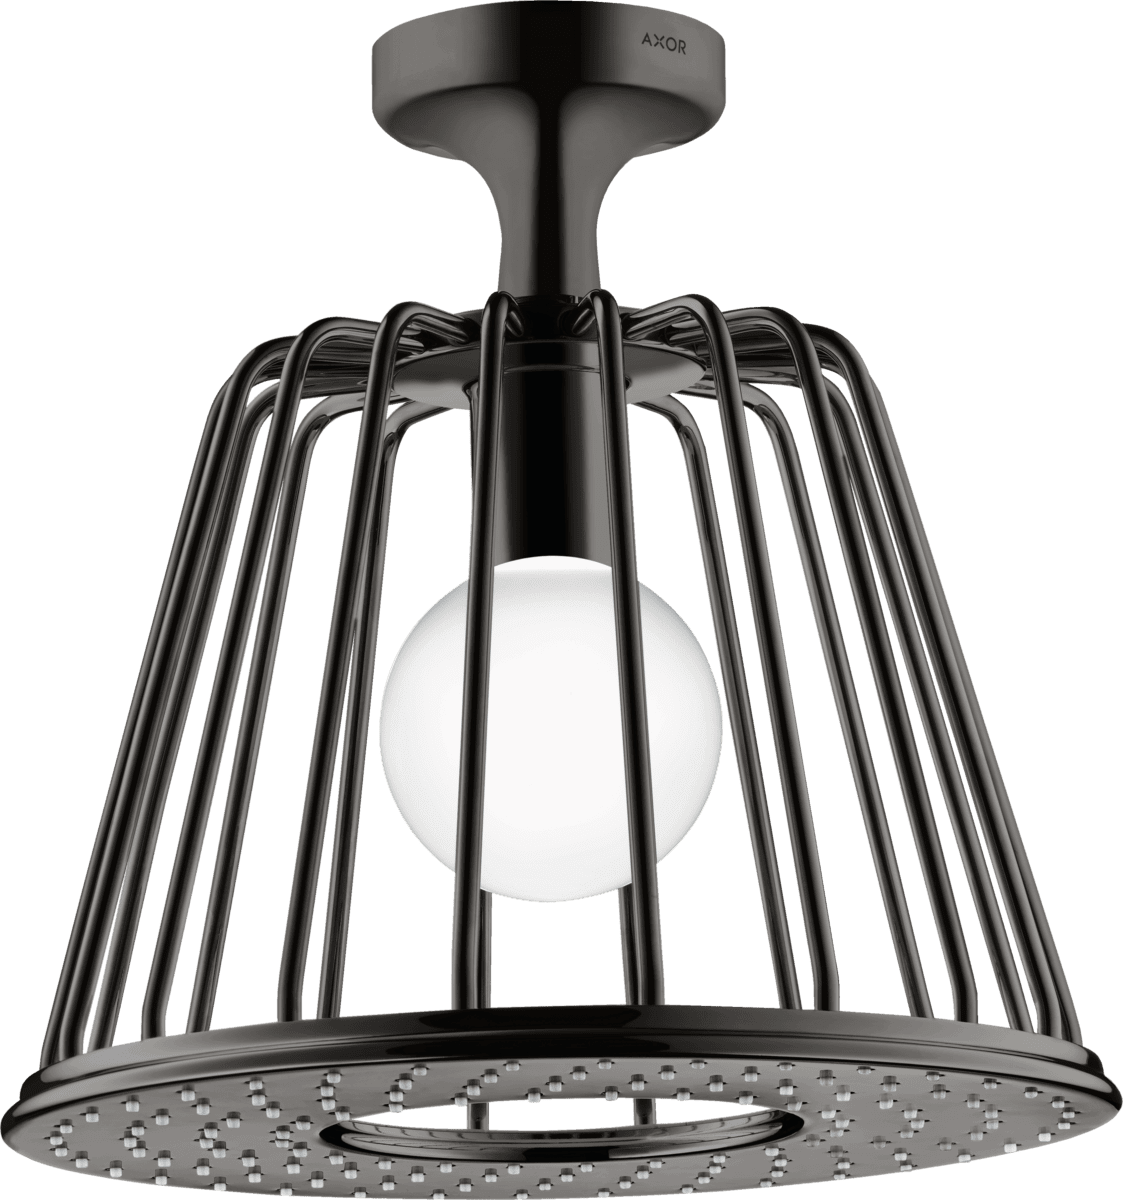 εικόνα του HANSGROHE AXOR LampShower/Nendo LampShower 275 1jet with ceiling connector #26032330 - Polished Black Chrome